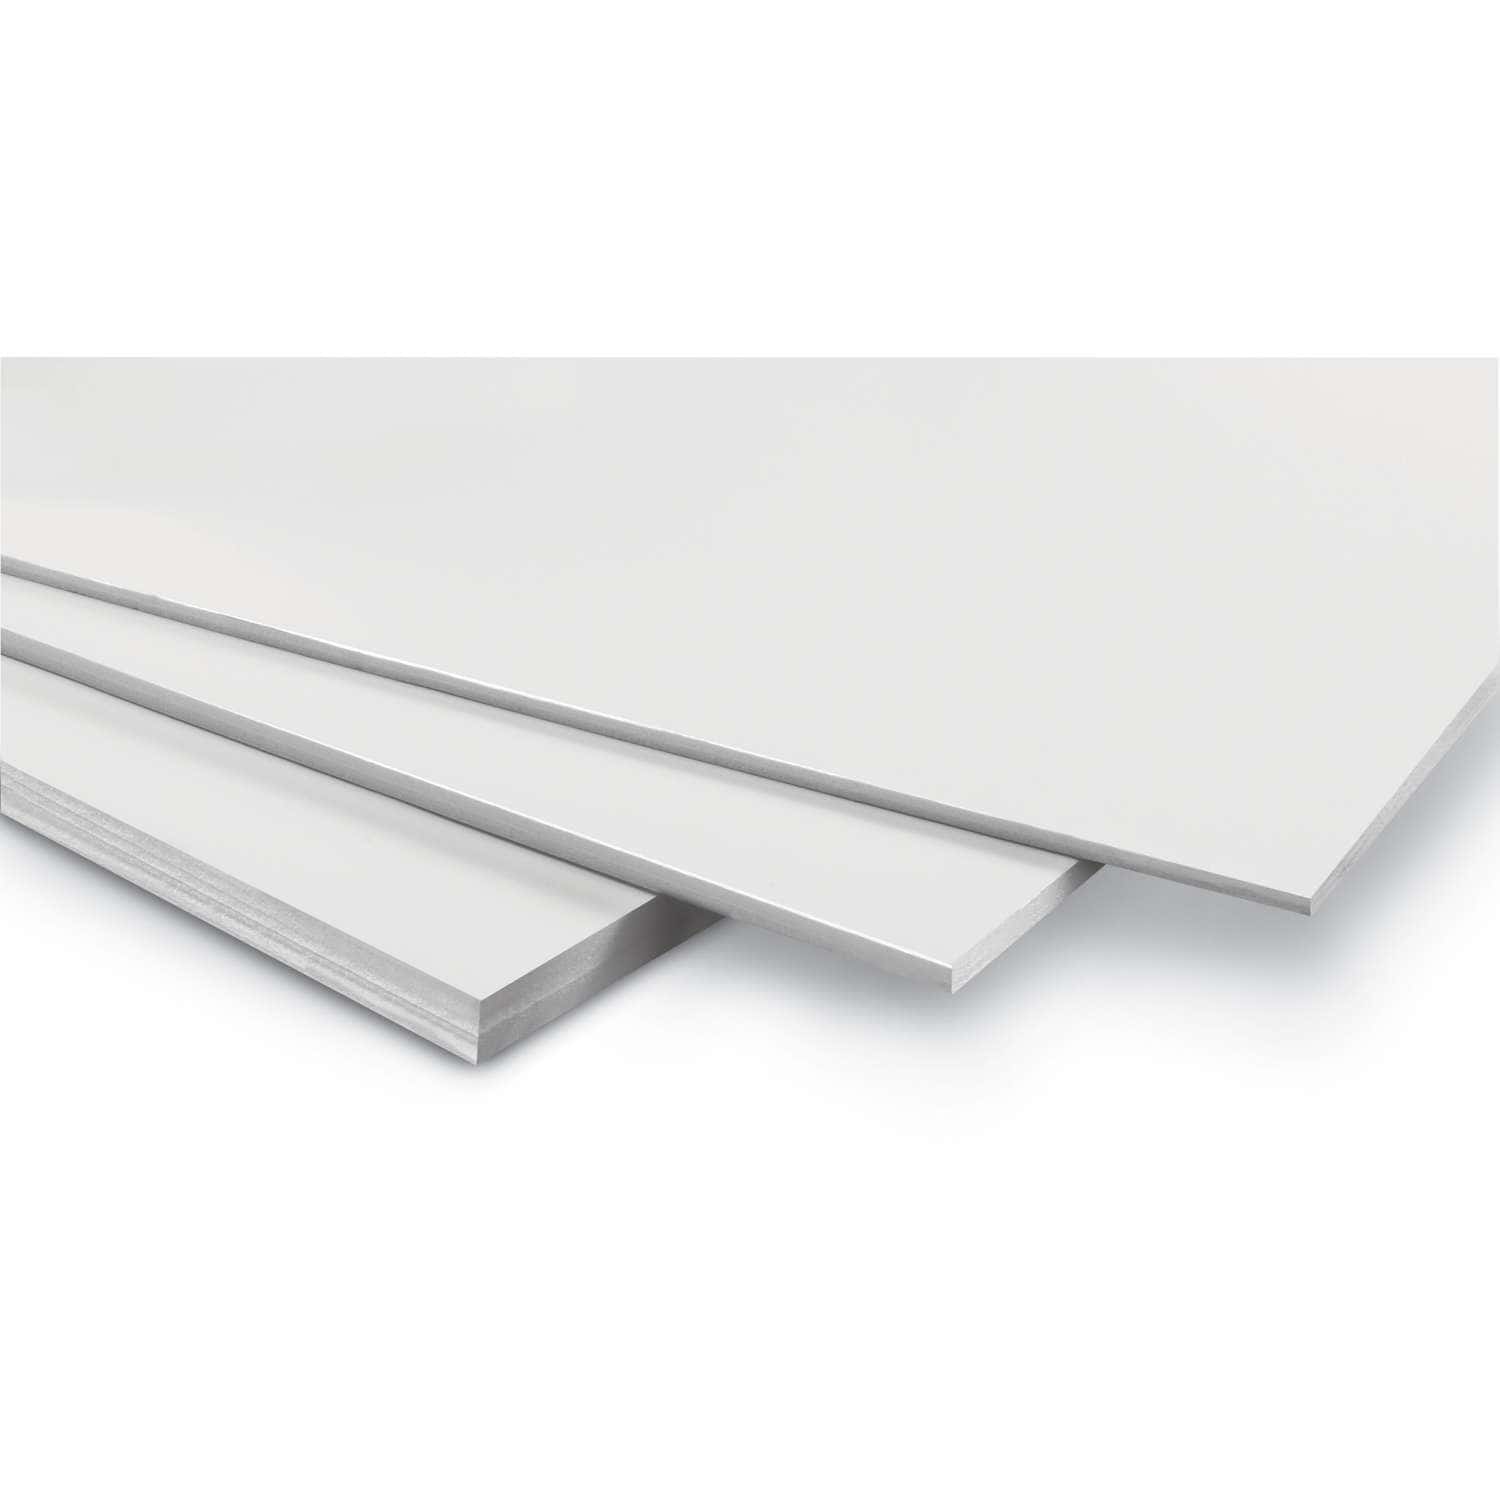 Carton mousse 5 mm 2 faces aluminium laqué blanc - 70 x 100 cm -  Rougier&Plé Rouen